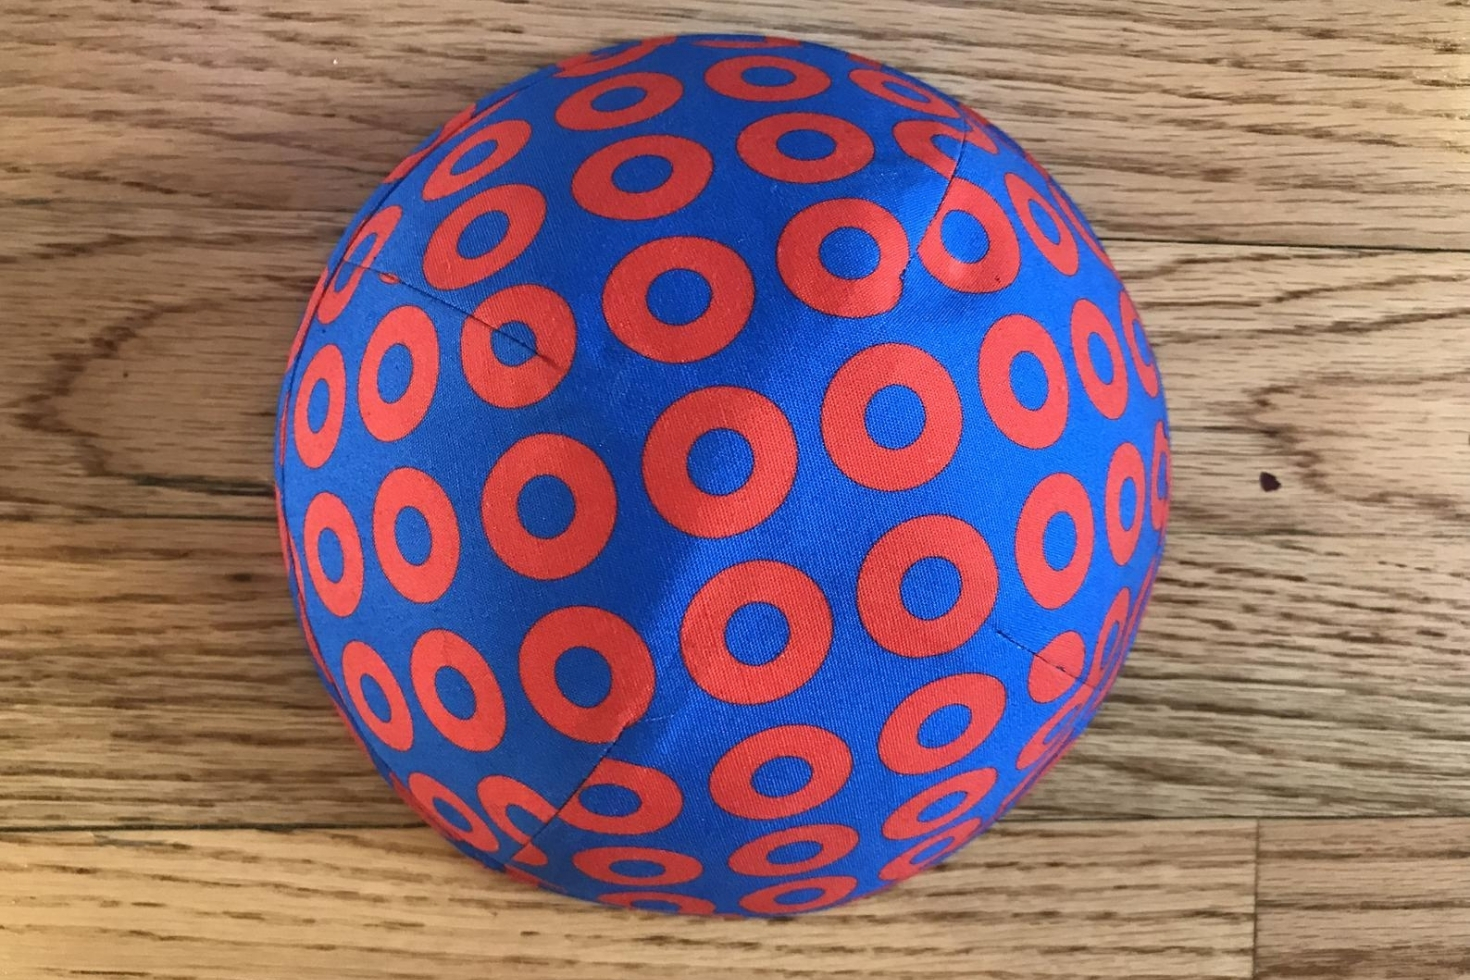 Blue yarmulka with red circles